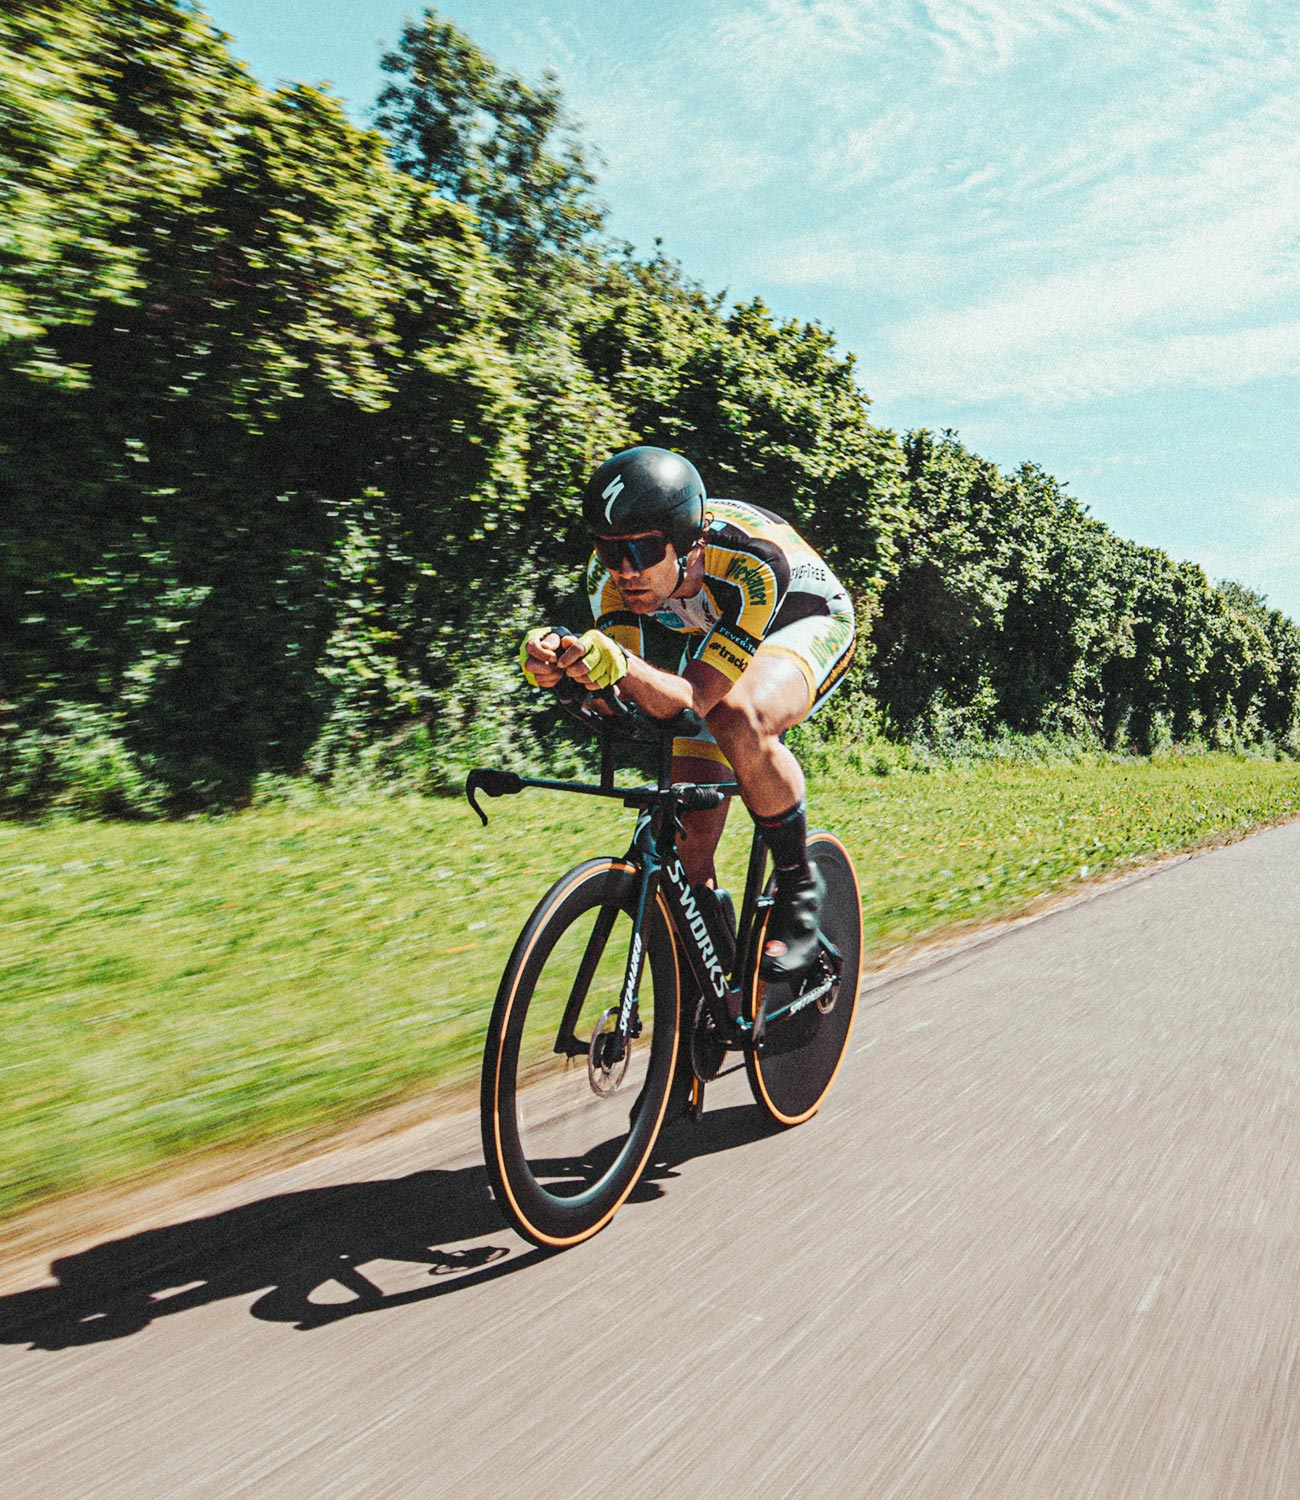 Ciclista de carretera circulando por una carretera, equipado con casco y gafas de sol de ciclista; Christoph Strasser © Lex Karelly